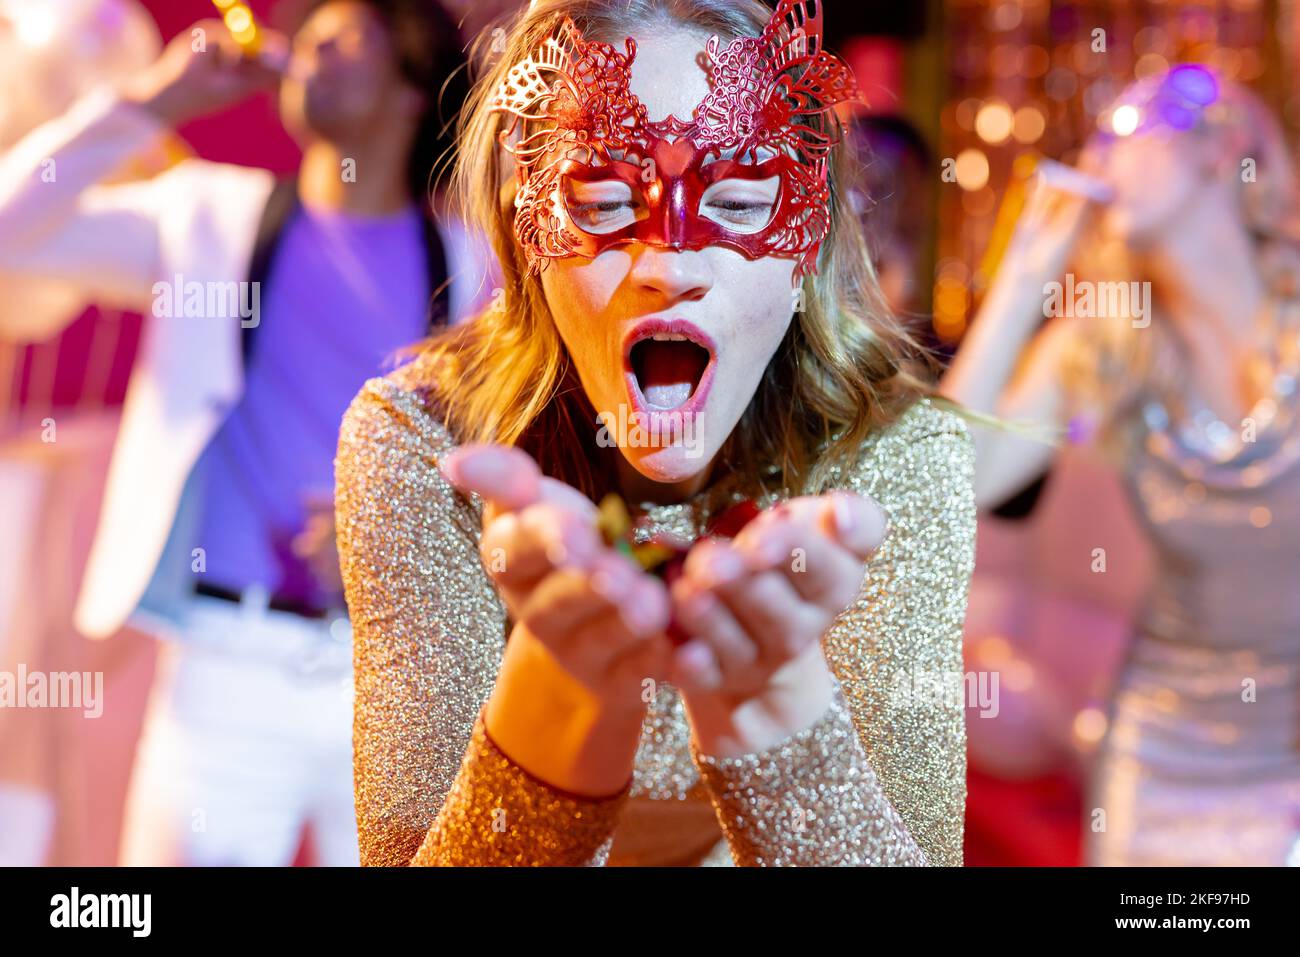 Bonne femme de race blanche dans un masque qui soufflait de paillettes sur le dancefloor lors d'une fête dans une boîte de nuit Banque D'Images